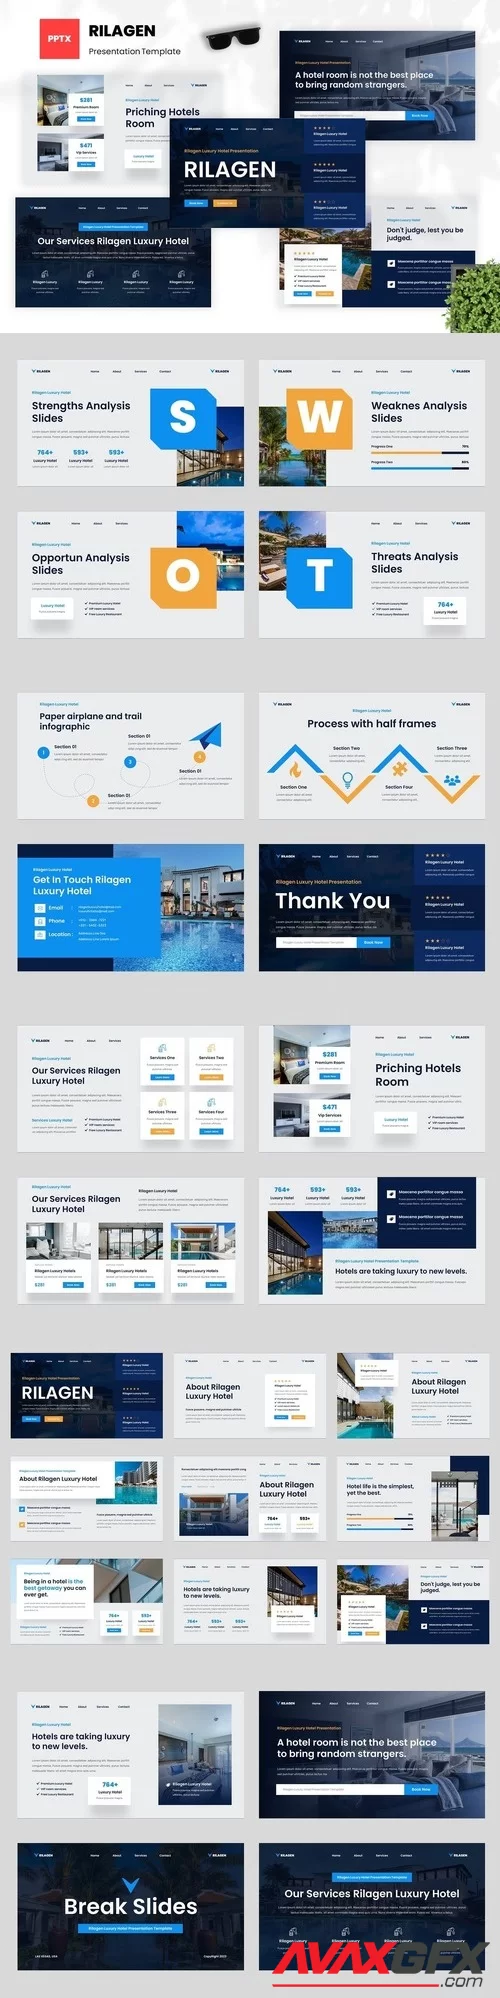 Rilagen - Luxury Hotel PowerPoint, Keynote and Google Slides Template [PPTX]